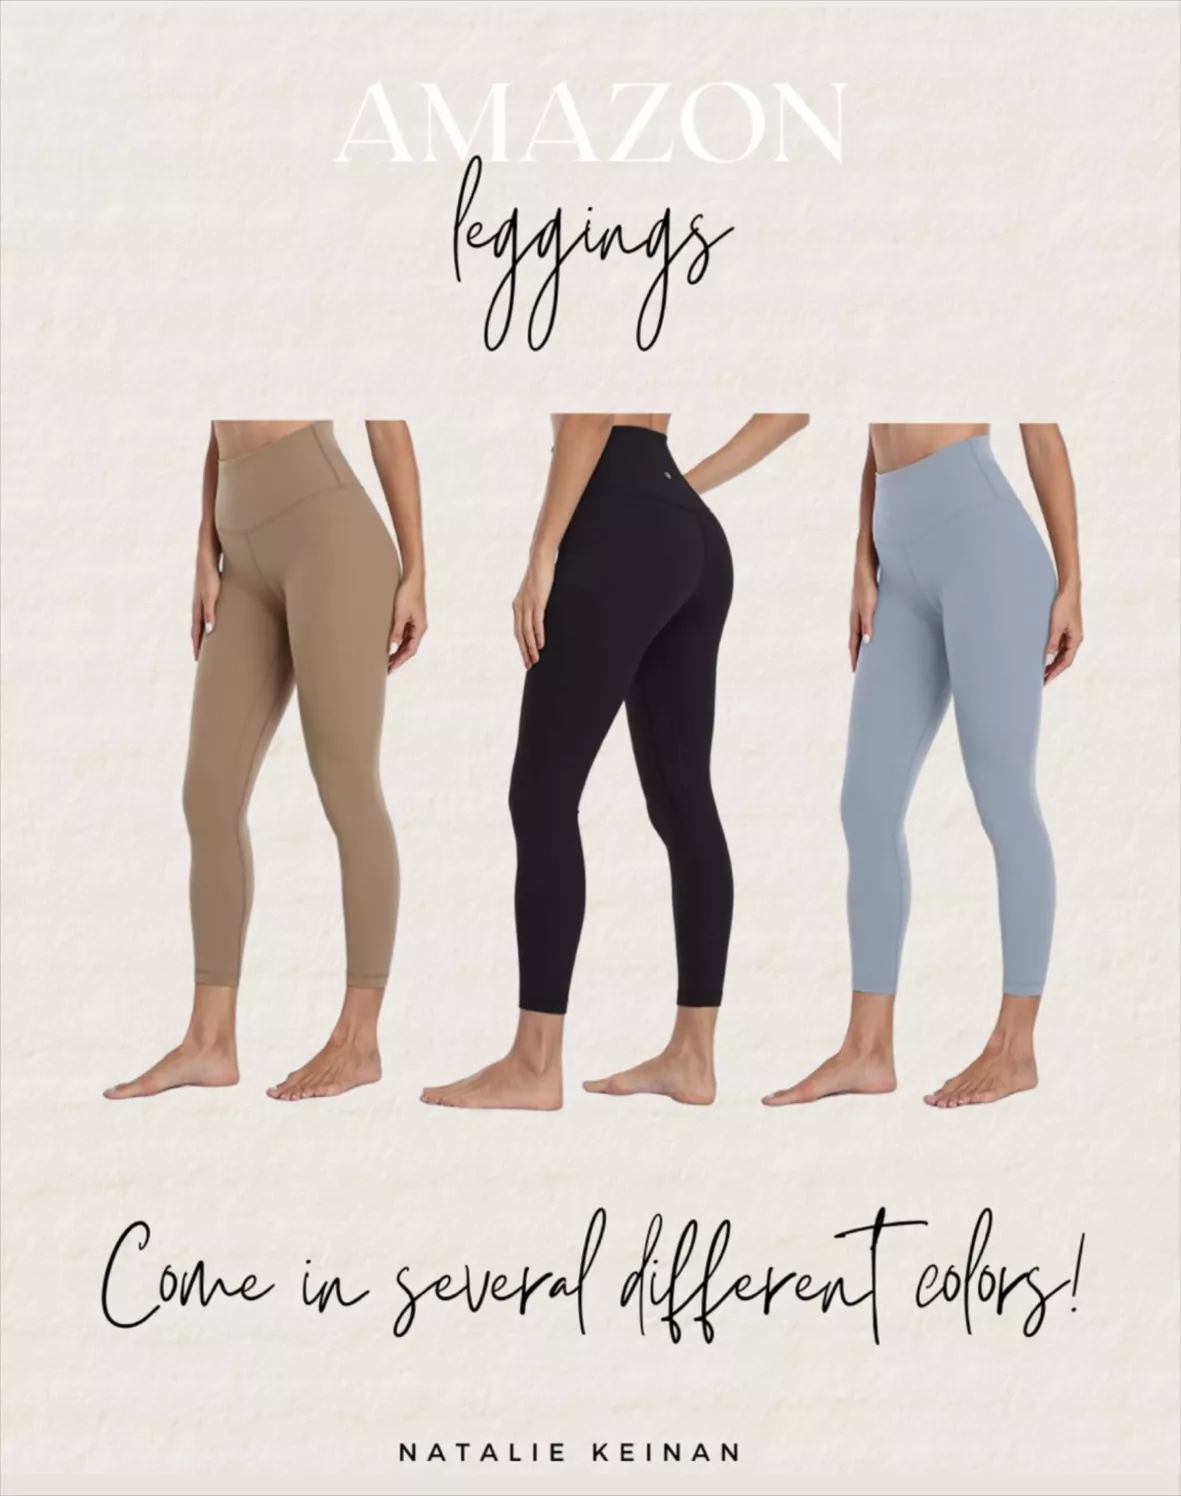 HeyNuts Essential 7/8 Leggings, … curated on LTK